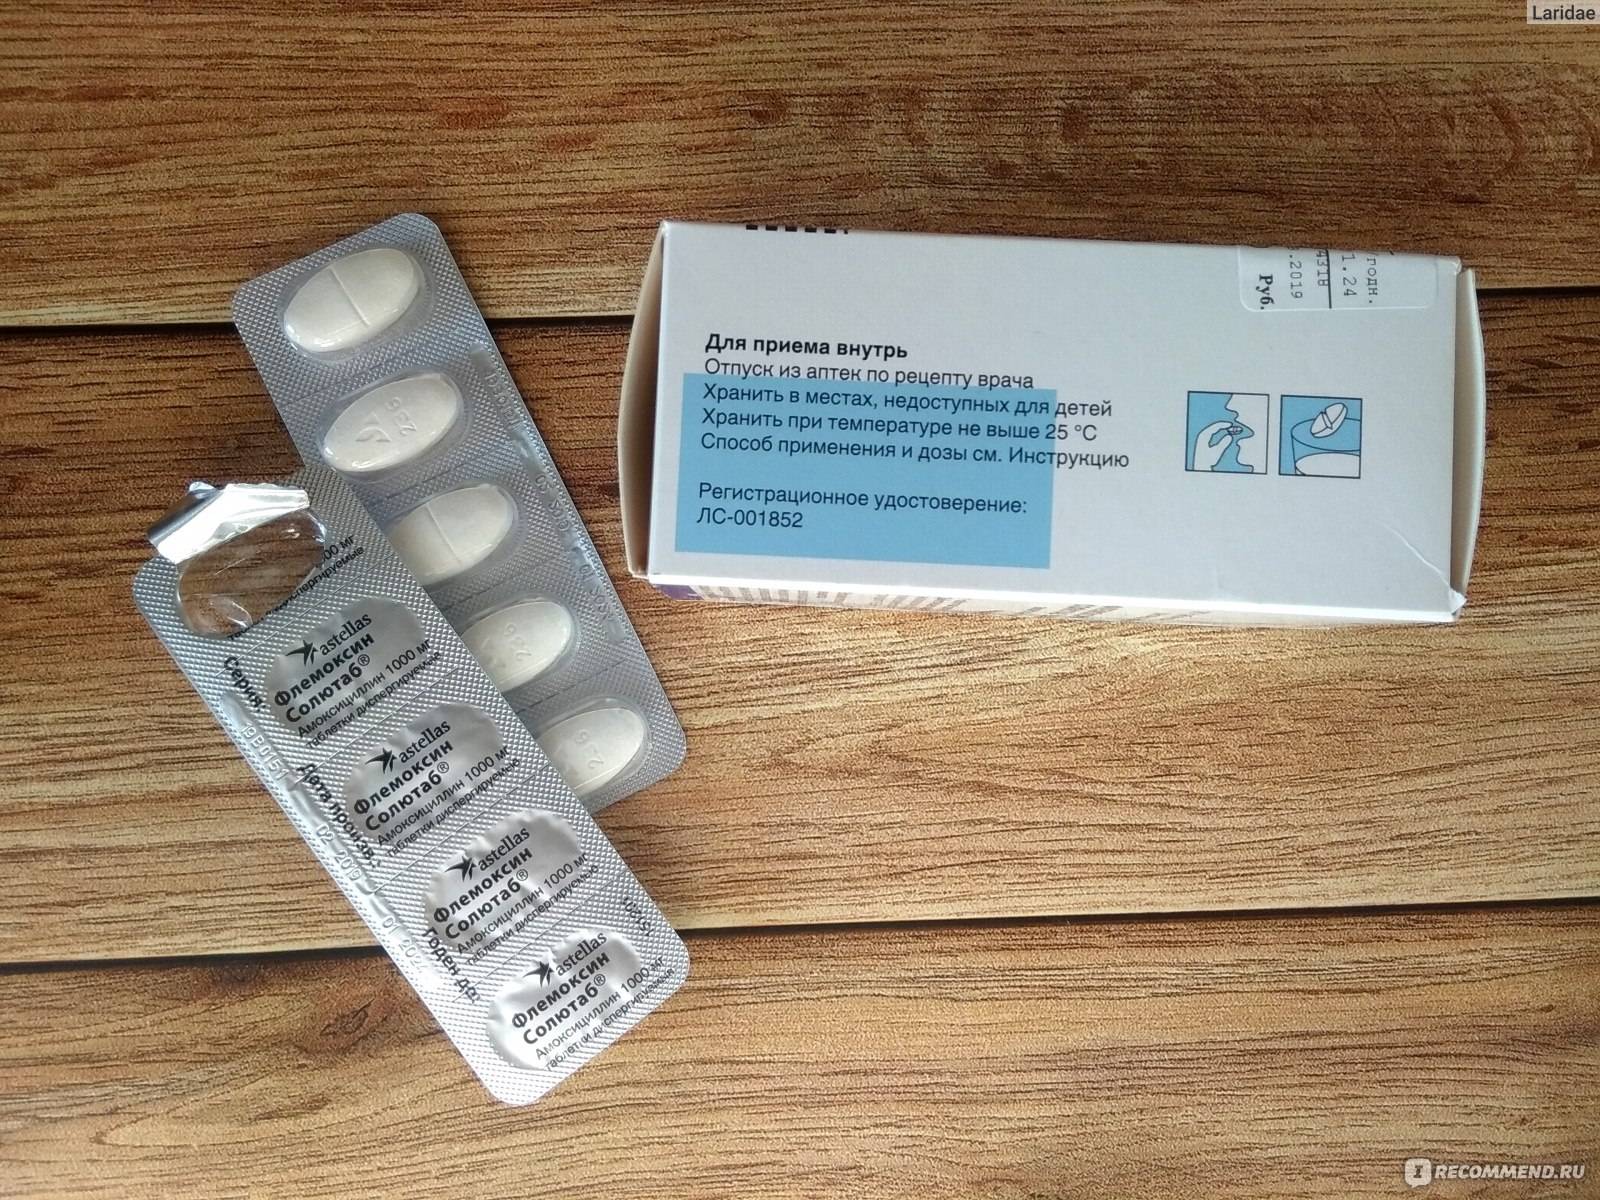 Антибиотики при стоматите у детей: лечение Флемоксином, Амоксиклавом и другими препаратами